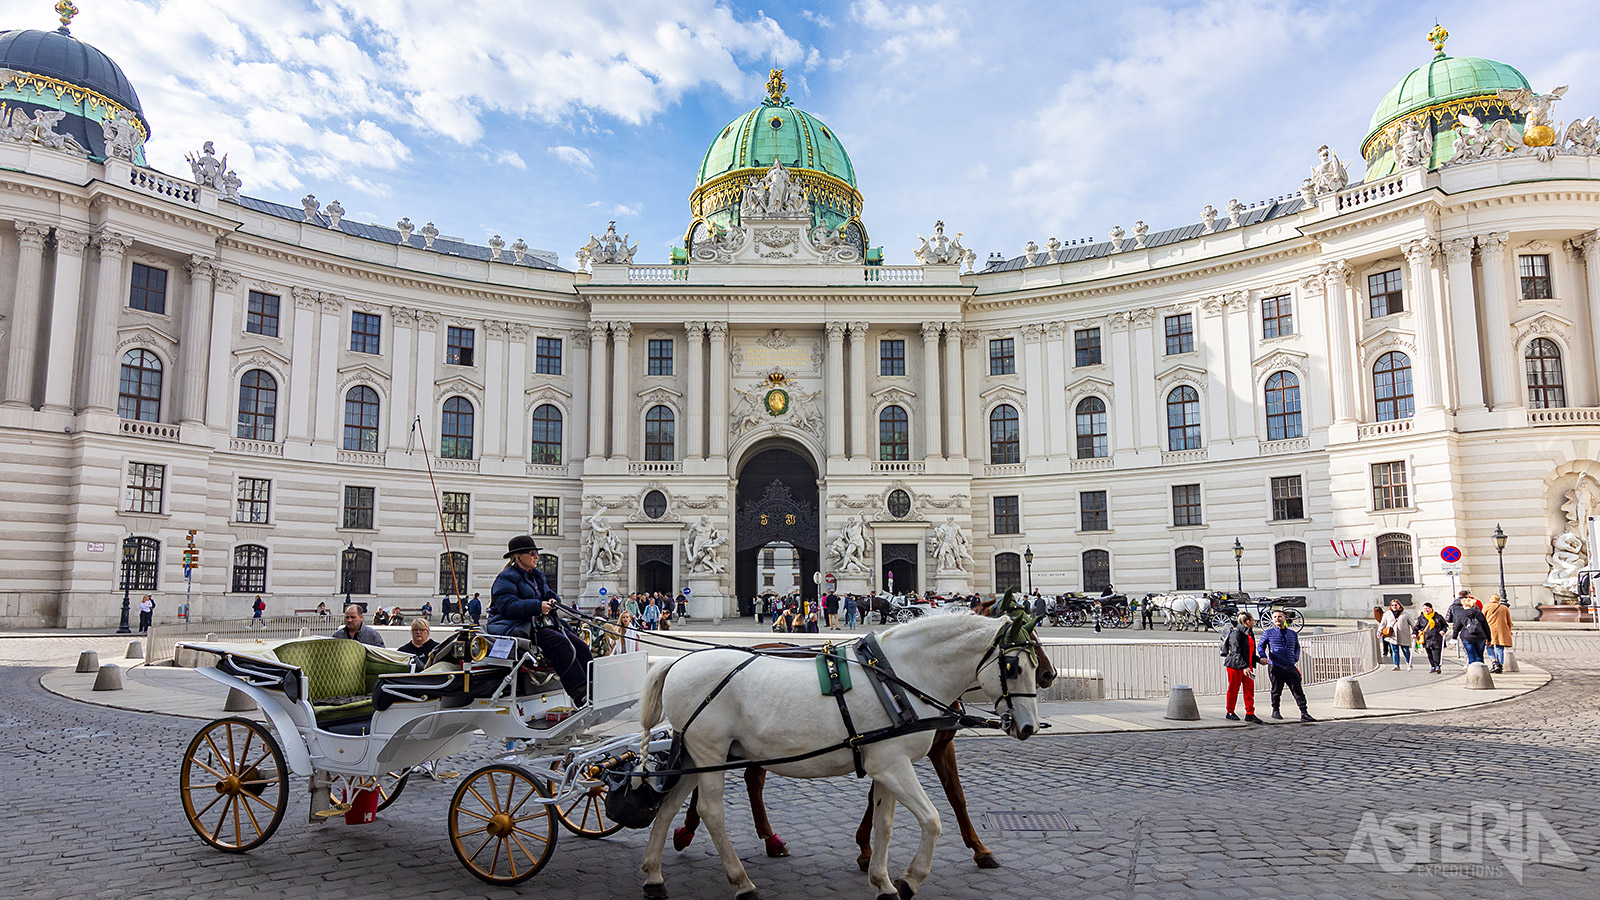 Het Hofburgpaleis is één van de grootste paleiscomplexen ter wereld